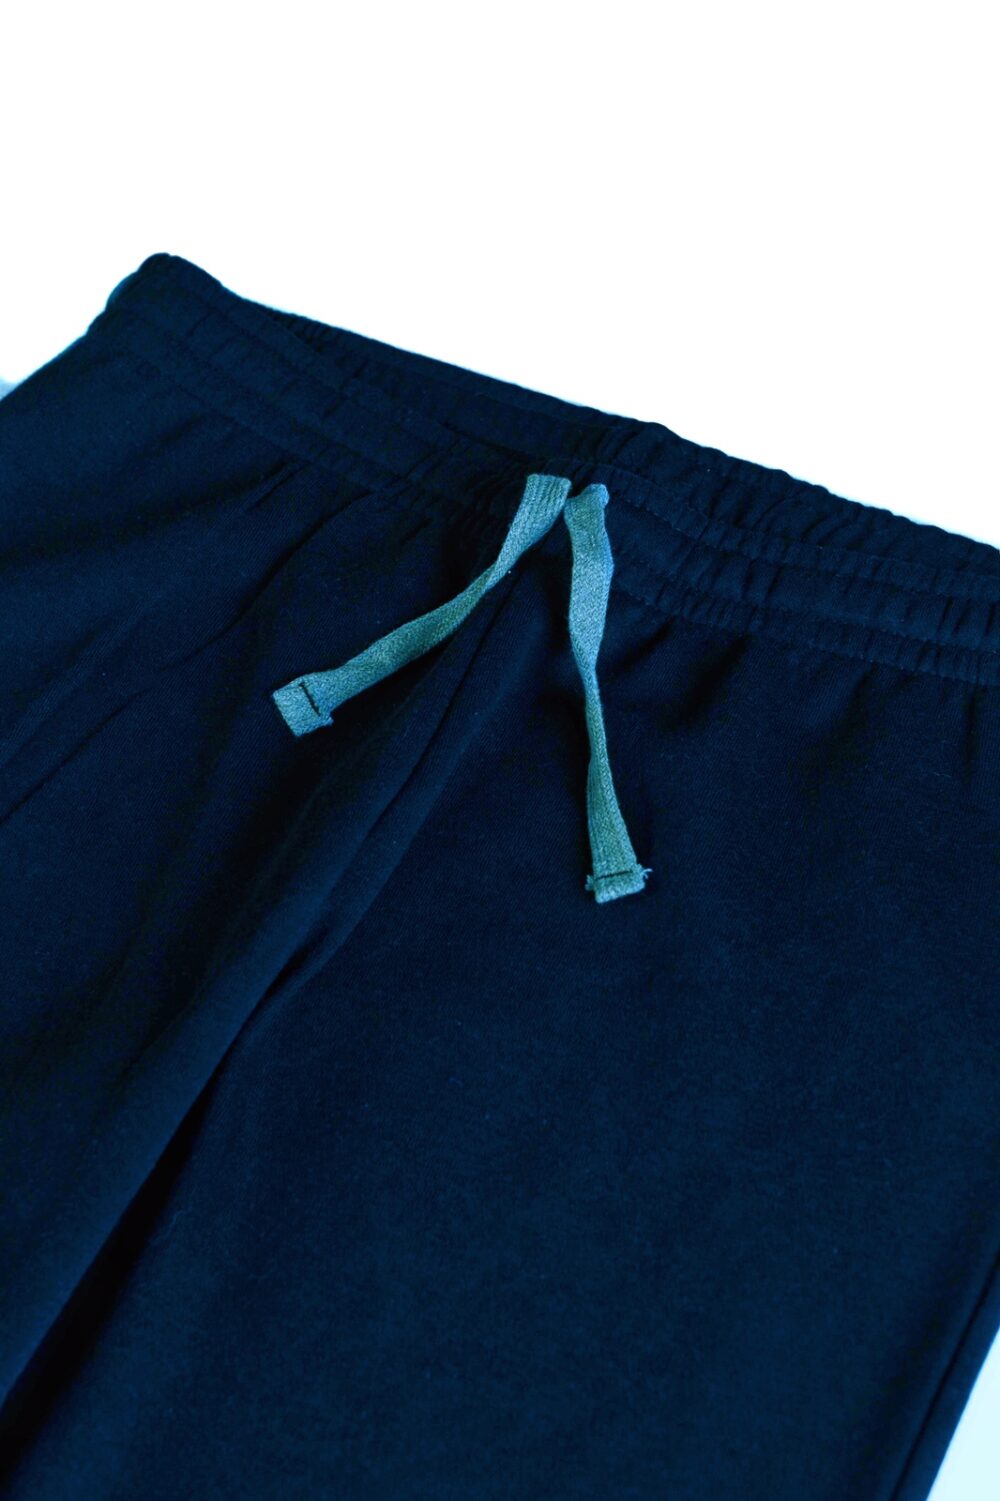 ZR Basic Trouser – Navy Blue